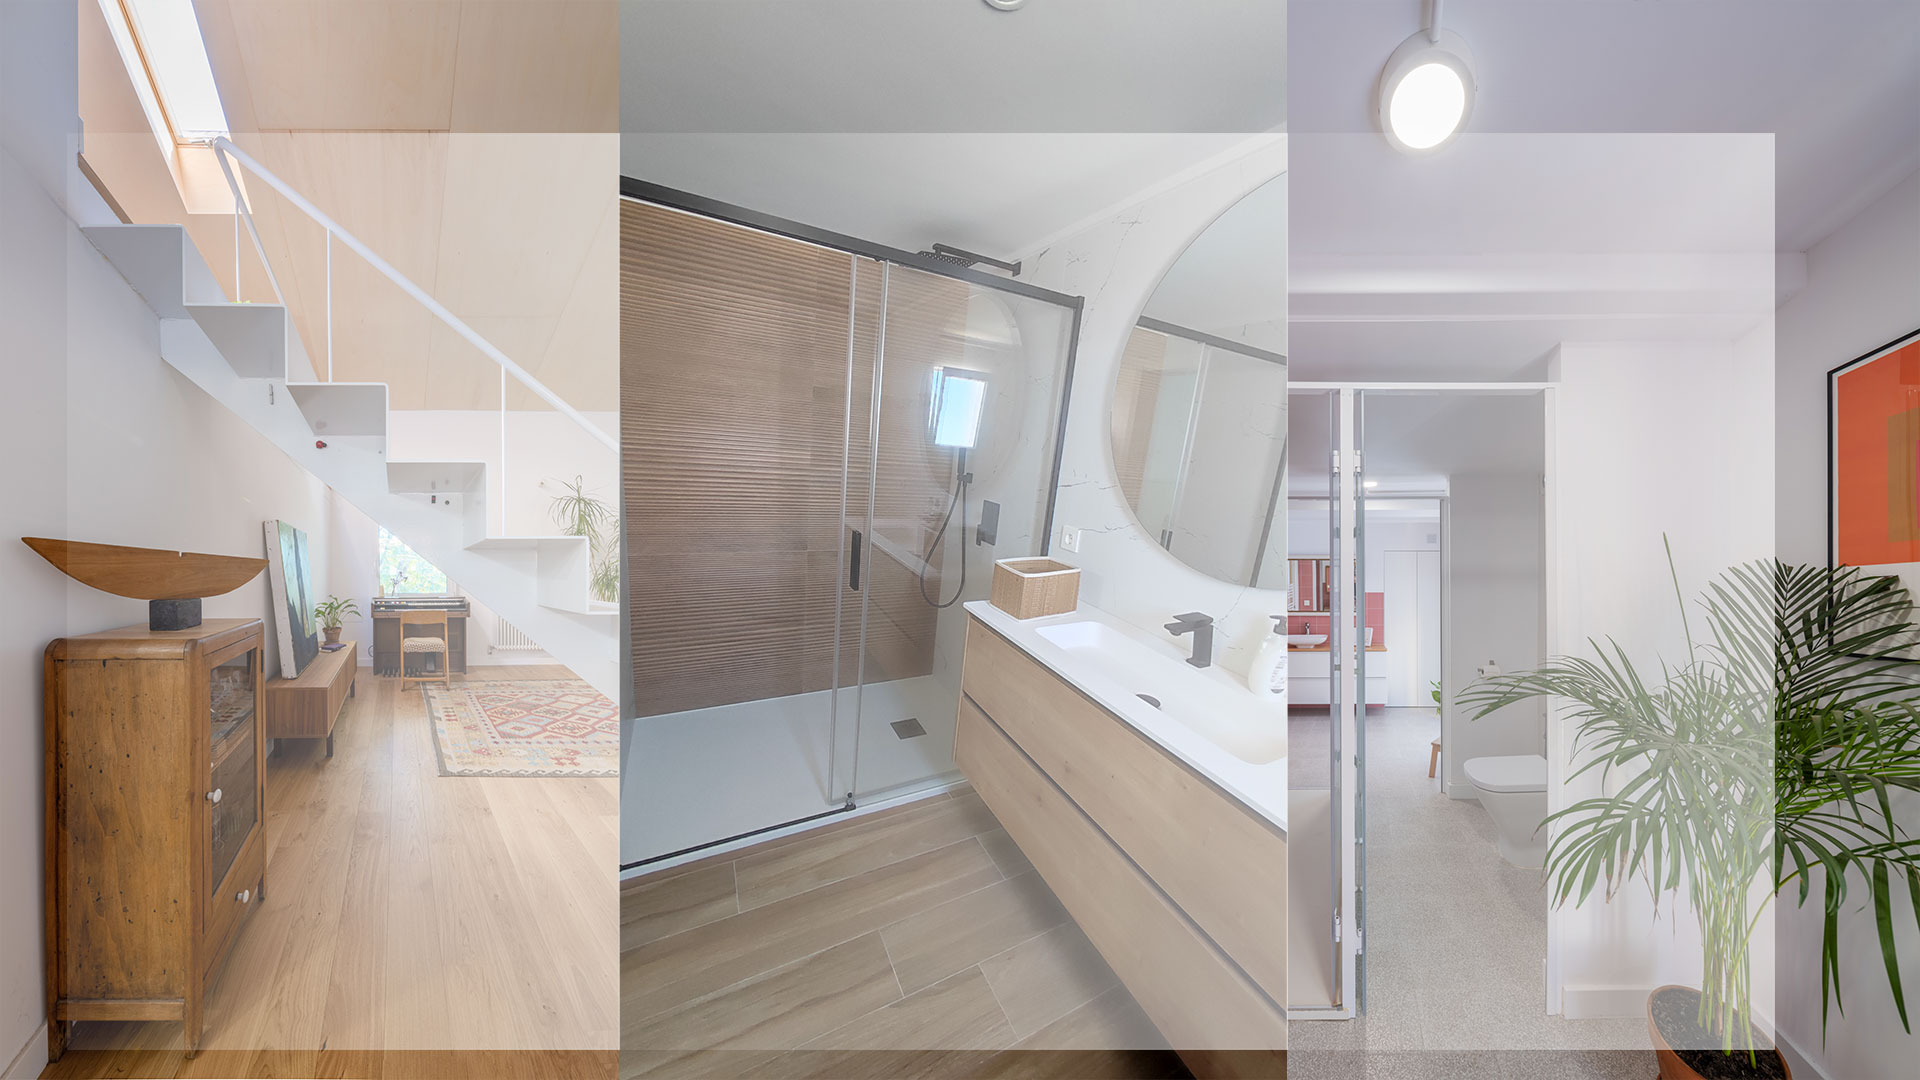 Composición de diferentes proyectos de Cealco: escaleras, interior de un baño, habitación con plantas y cuadro.